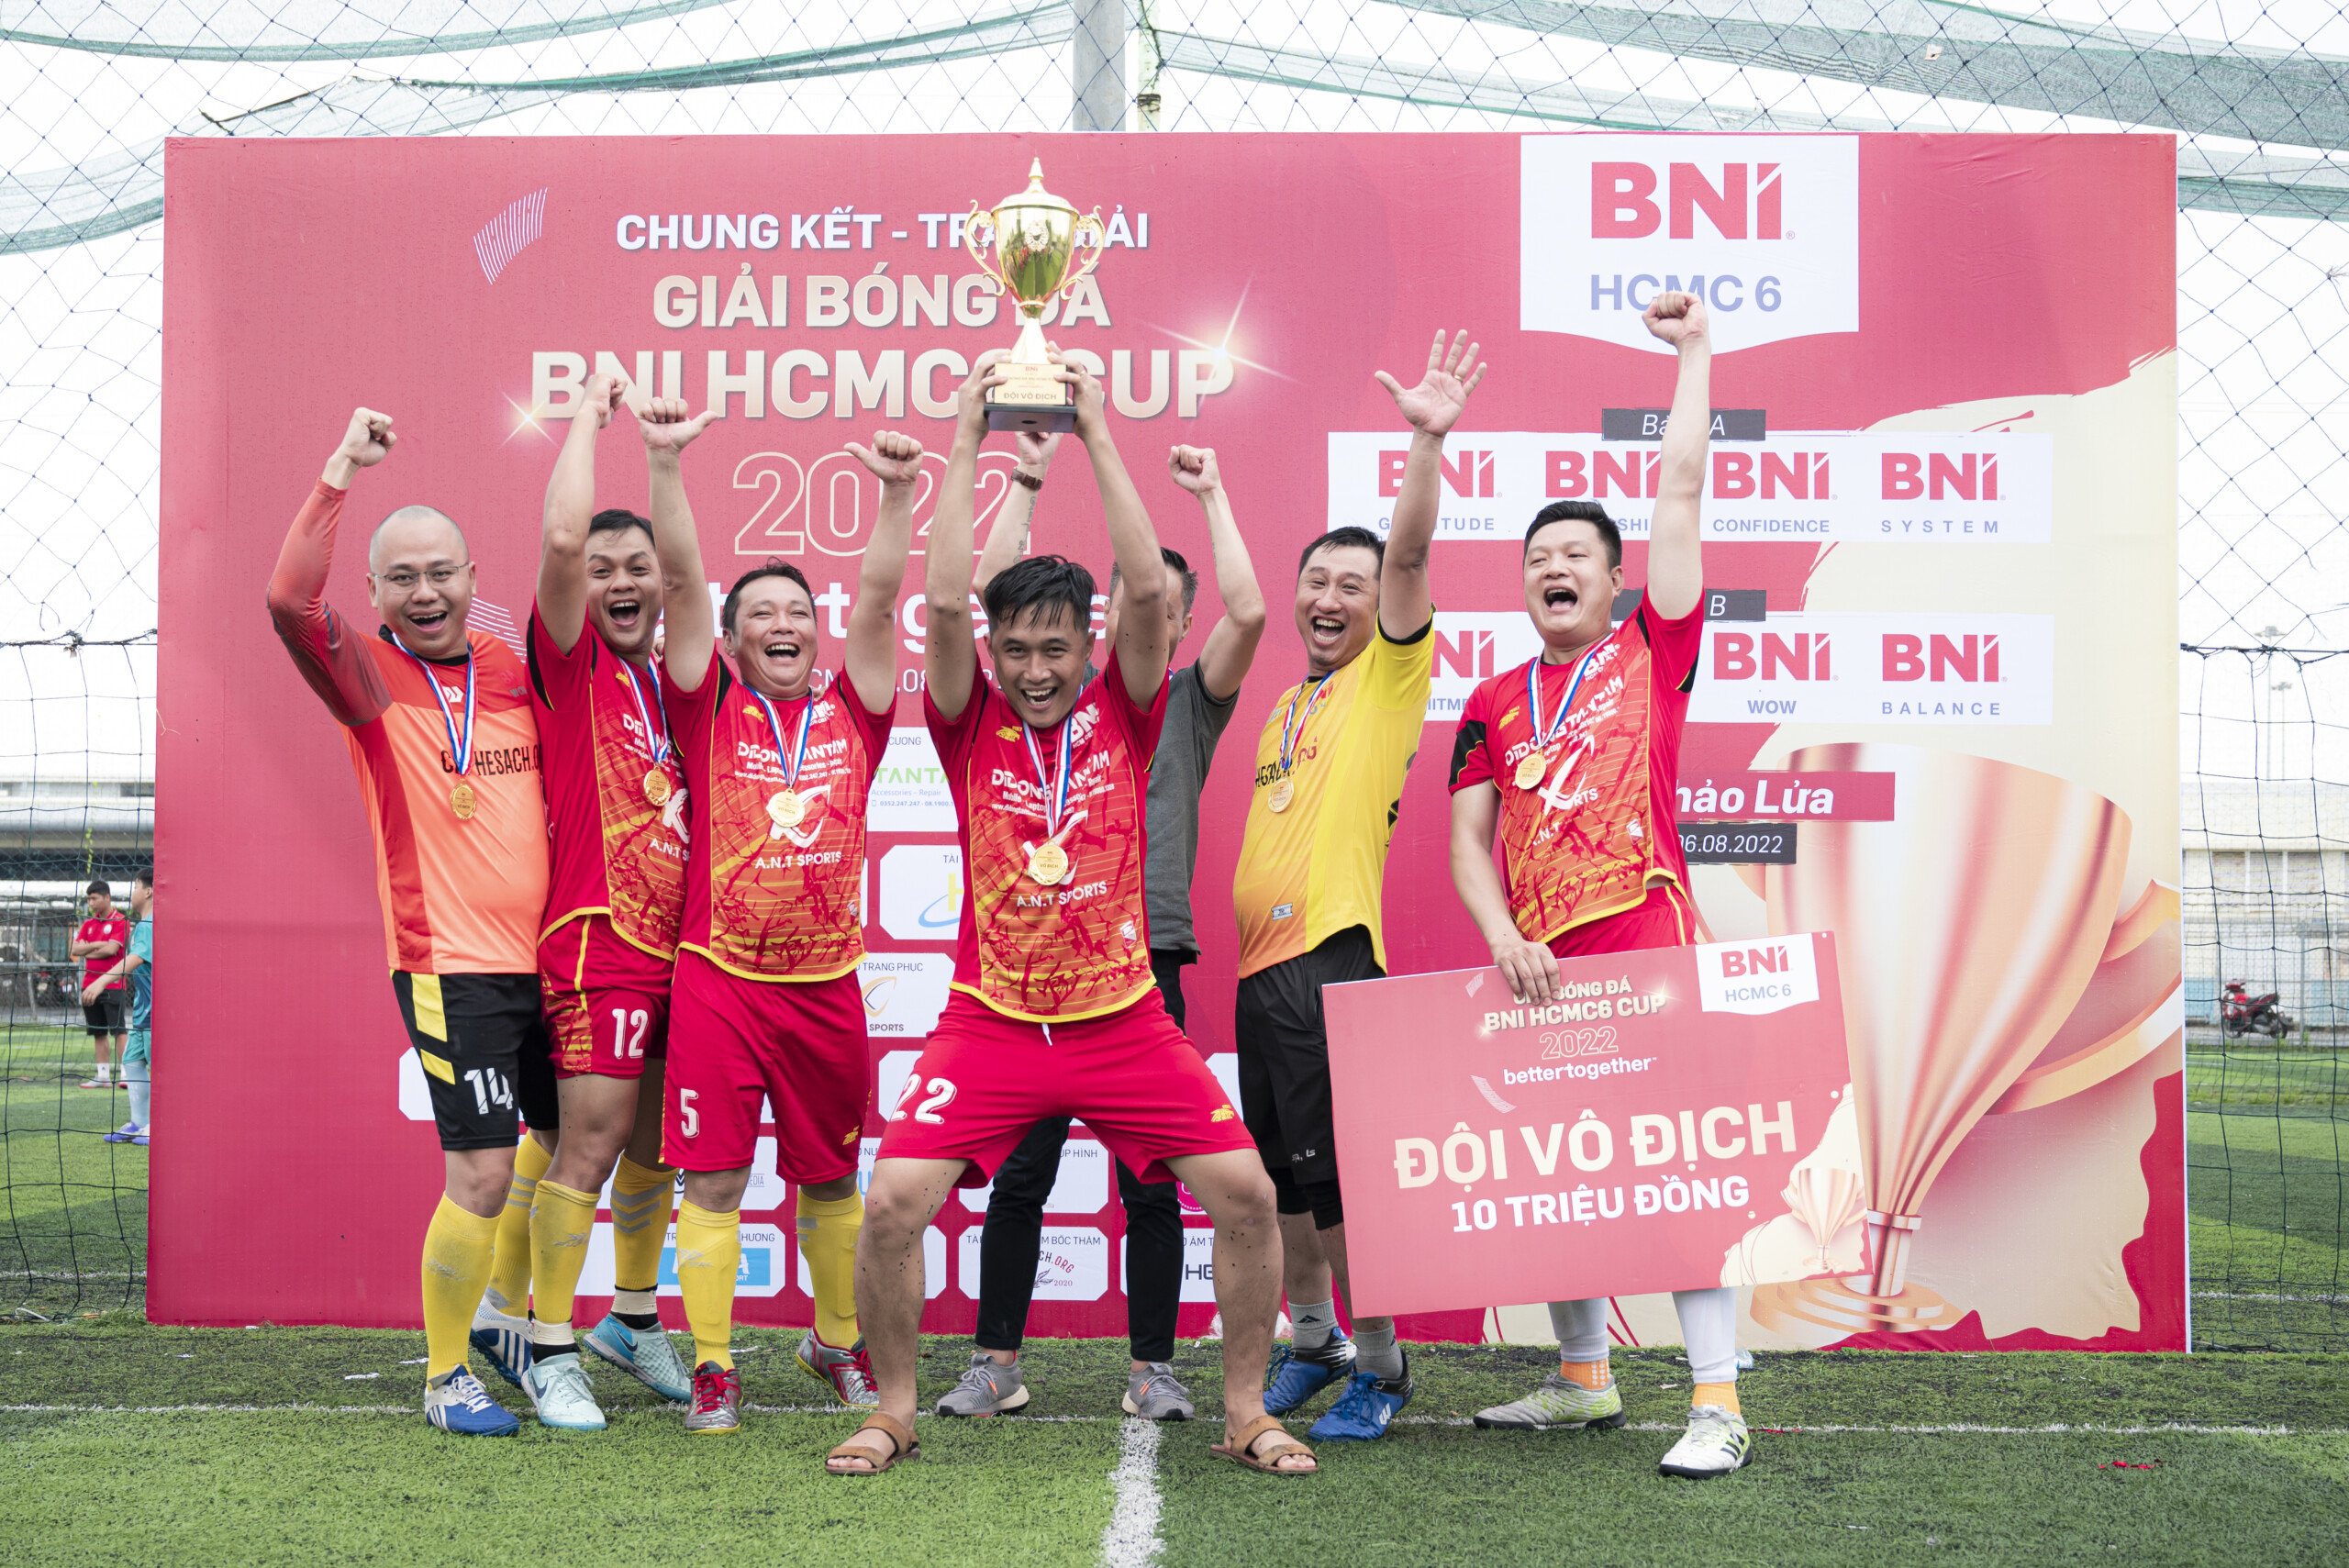 Chung kết của Giải Bóng Đá BNI HCM6 Cup 2022